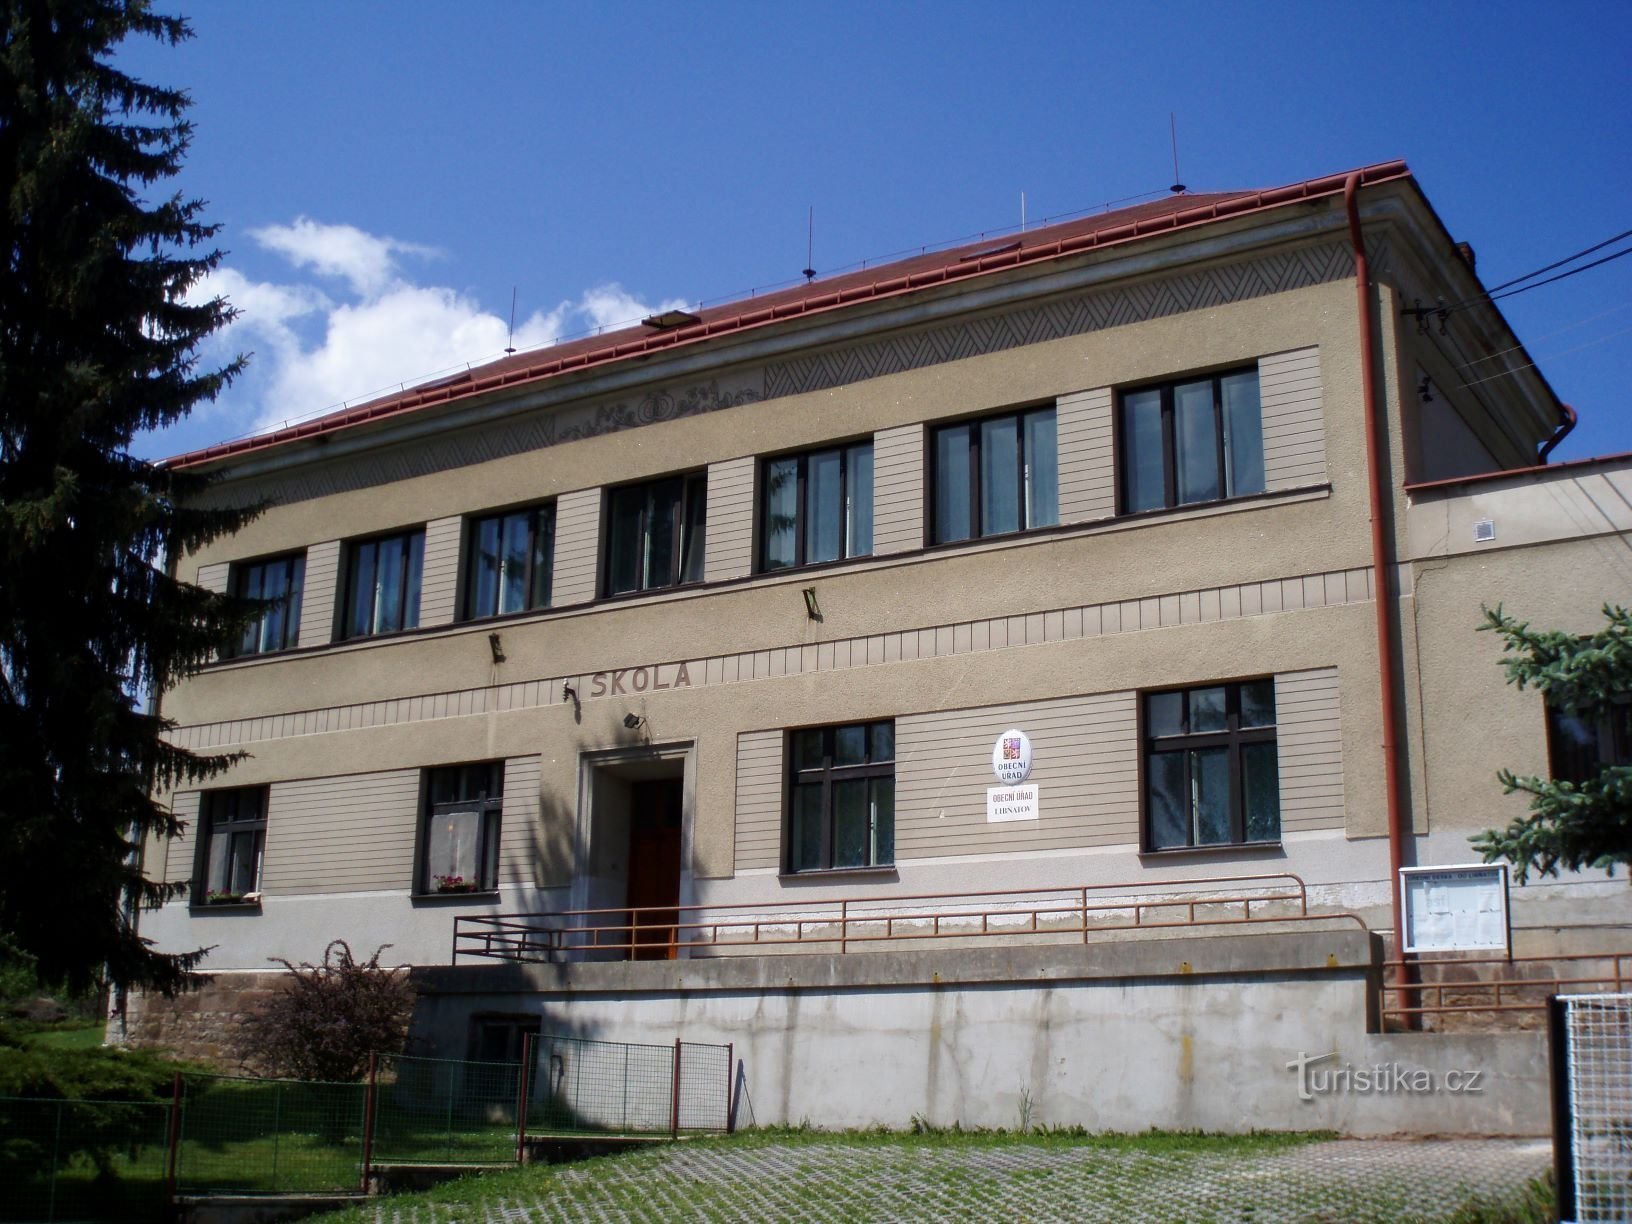 Η αρχική εμφάνιση του σημερινού δημοτικού γραφείου (Libňatov, 12.5.2009/XNUMX/XNUMX)